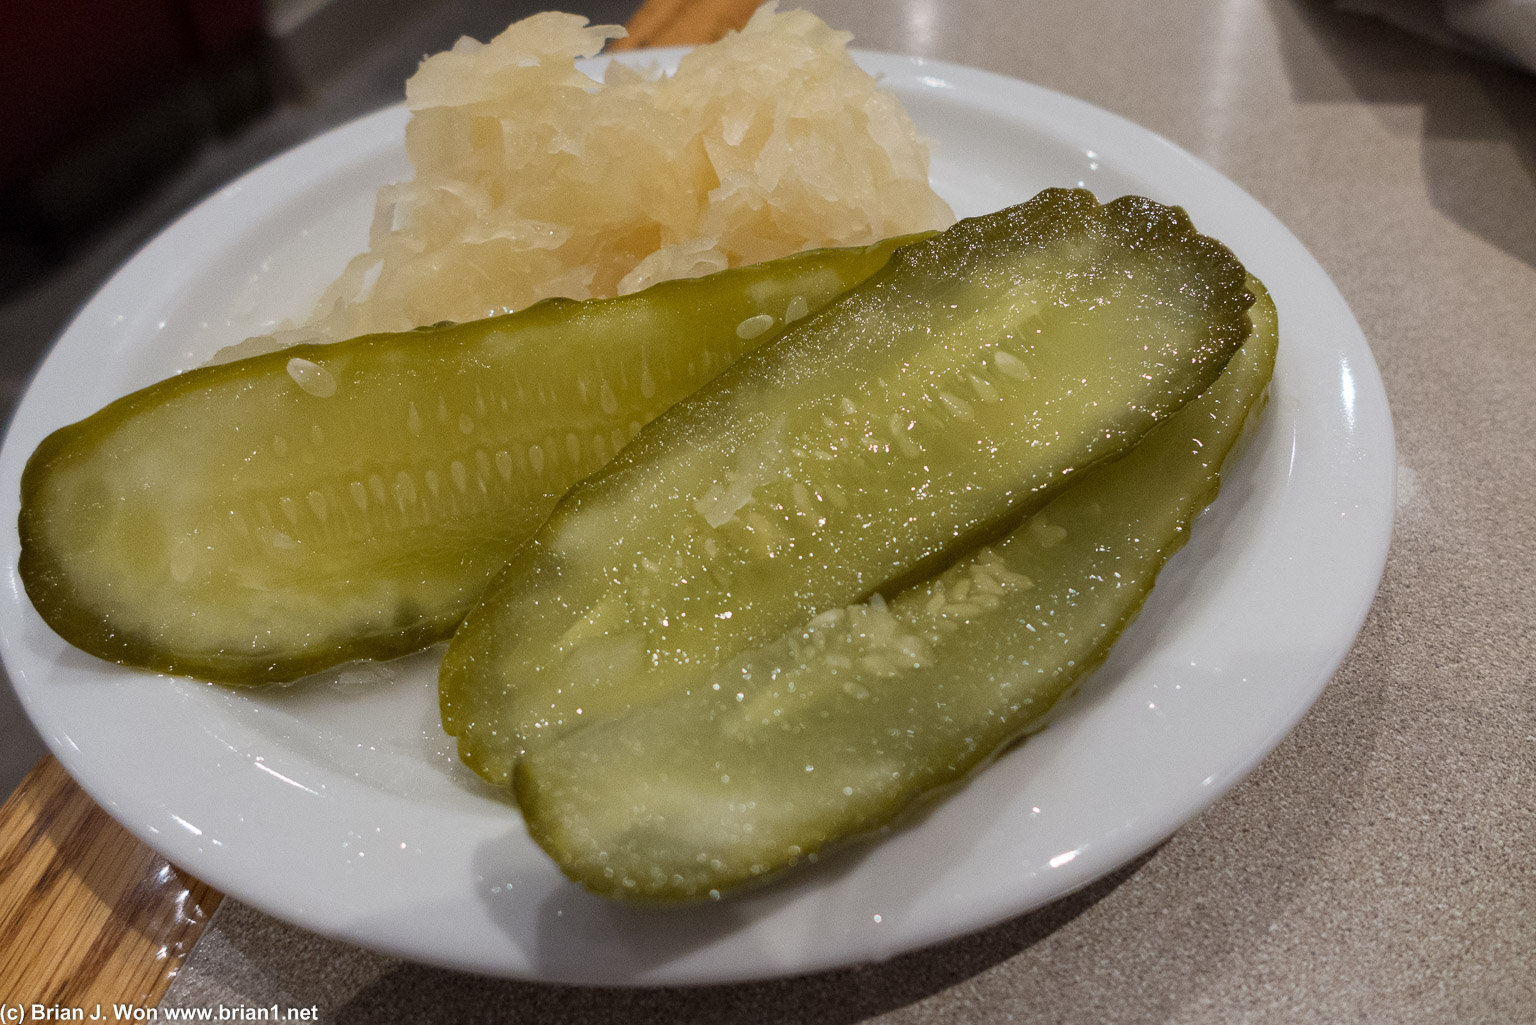 Pickles were pretty decent. Sauerkraut was forgettable.